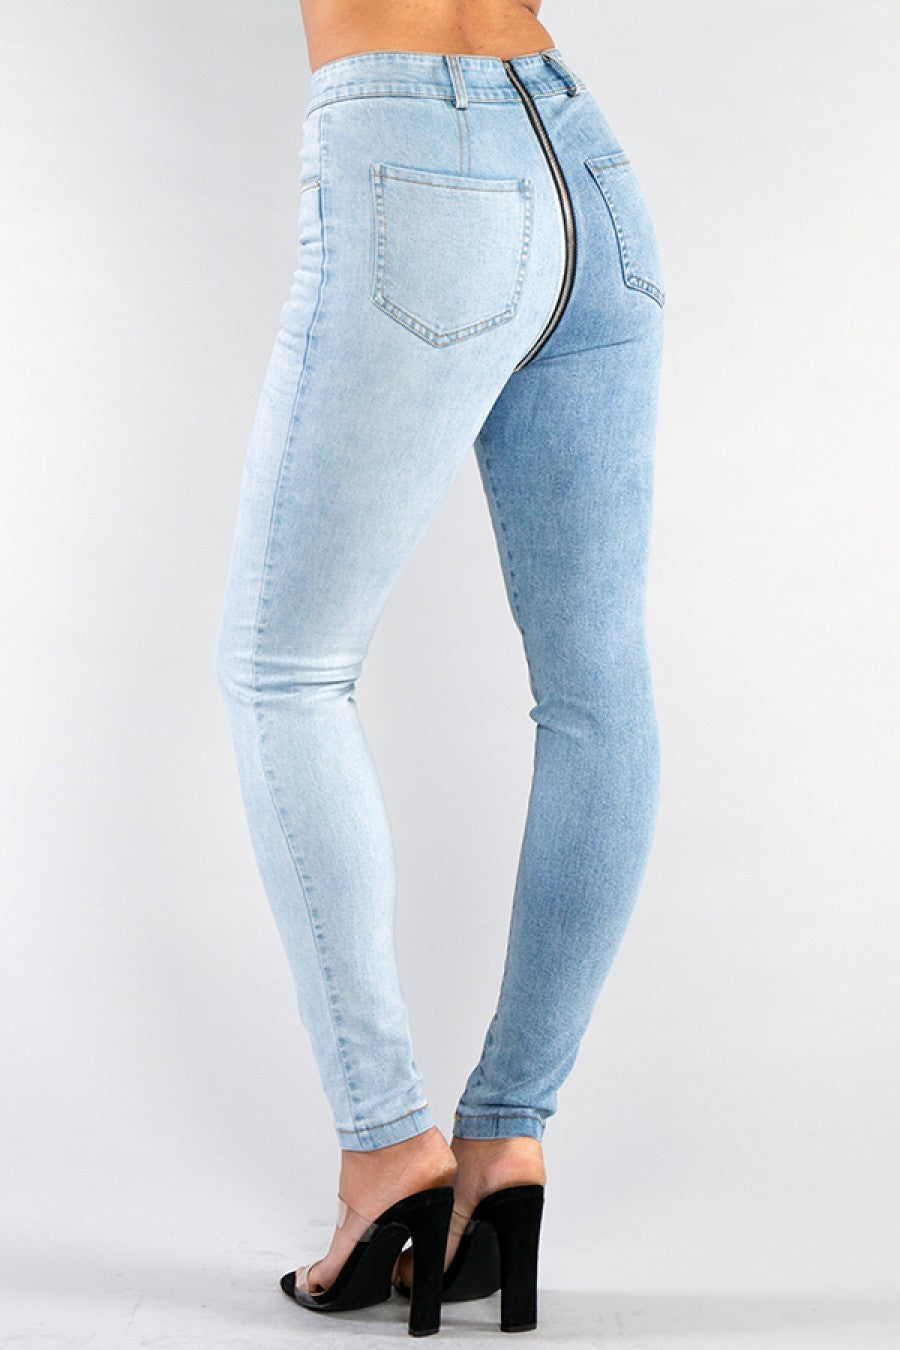 Zipper Spliced Jeans - SurgeStyle Boutique